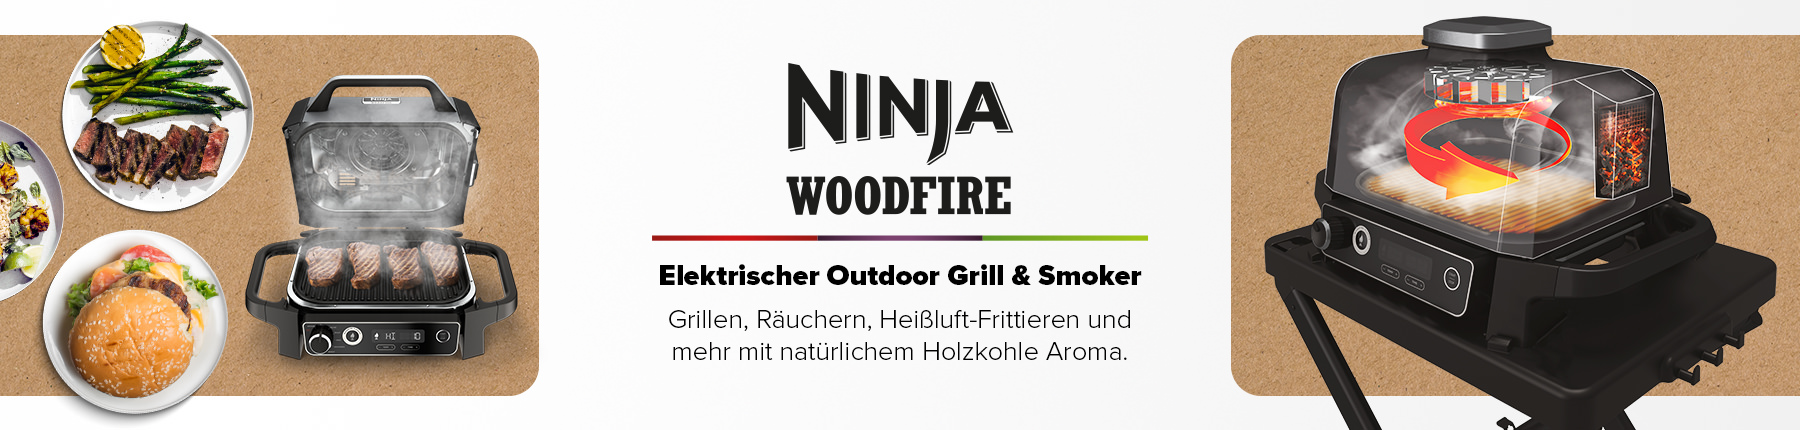 Elektrischer Outdoor Grill Ninja